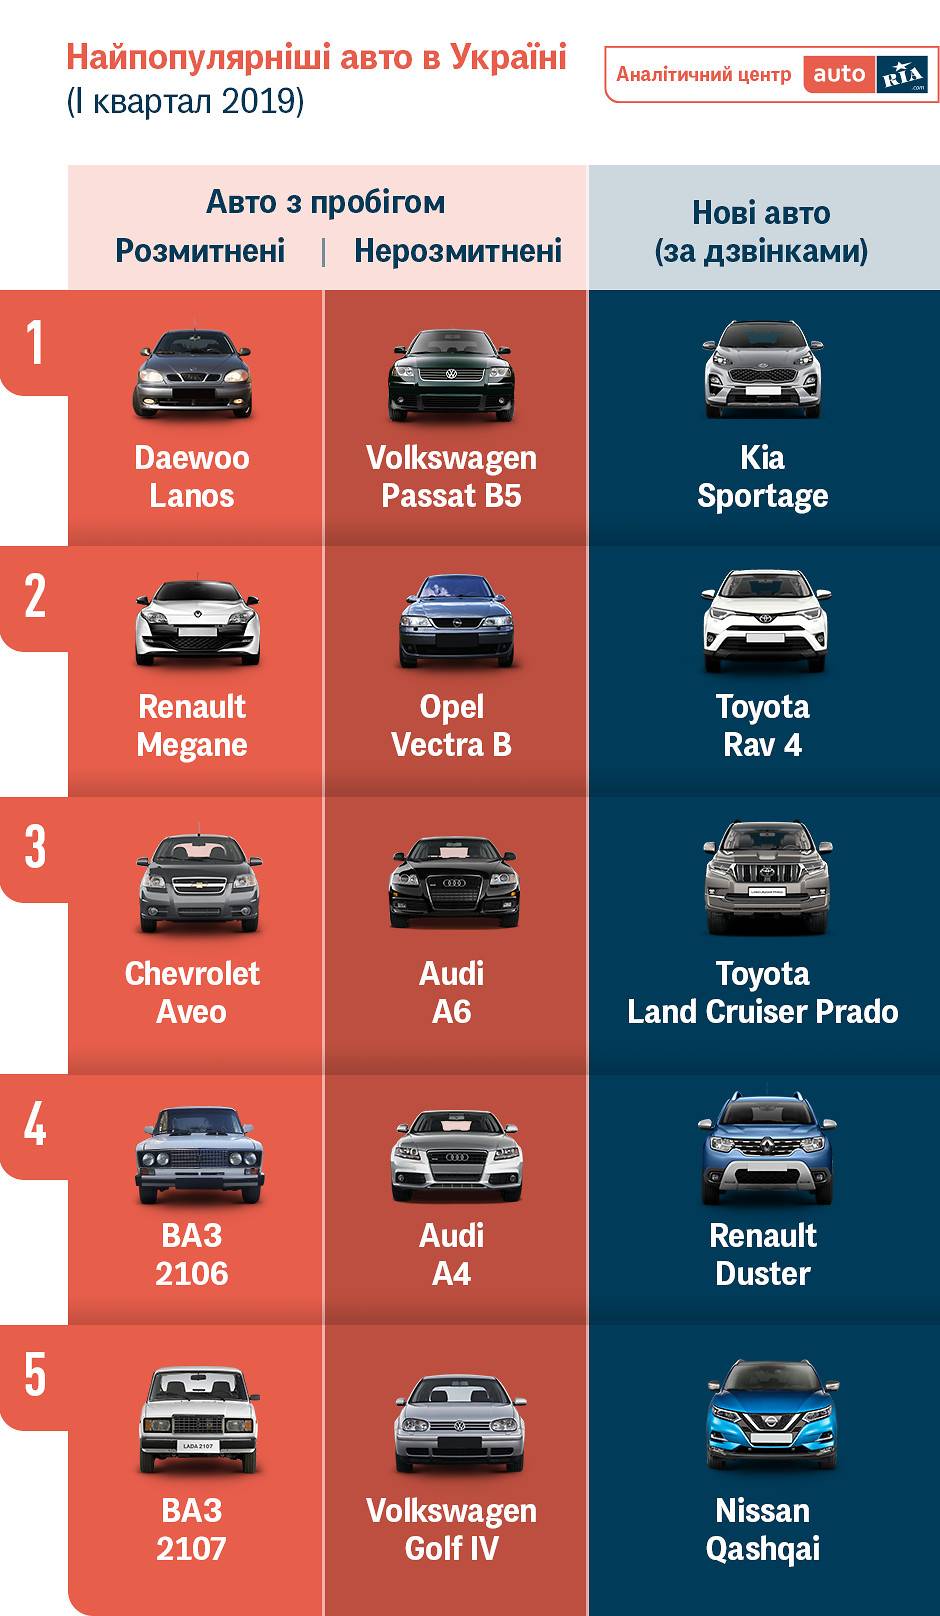 10 самых популярных автомобилей